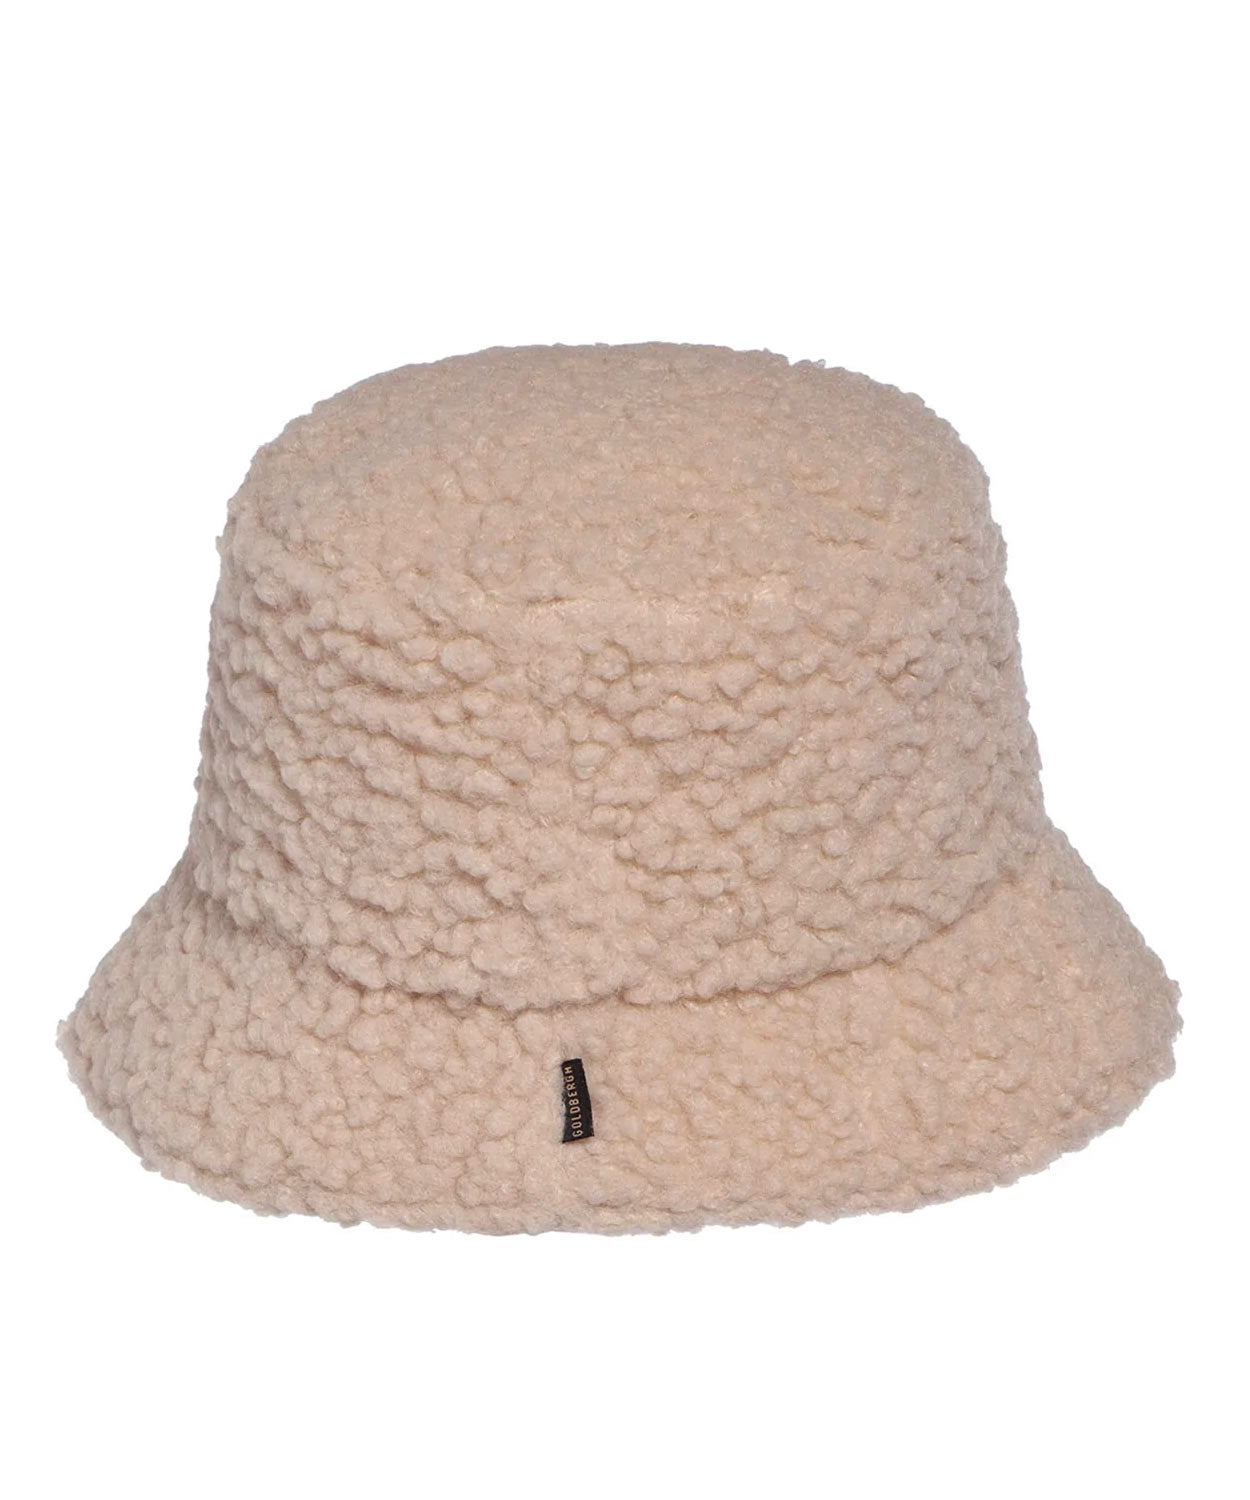 Teds Bucket Hat Hats | Beanies Goldbergh 